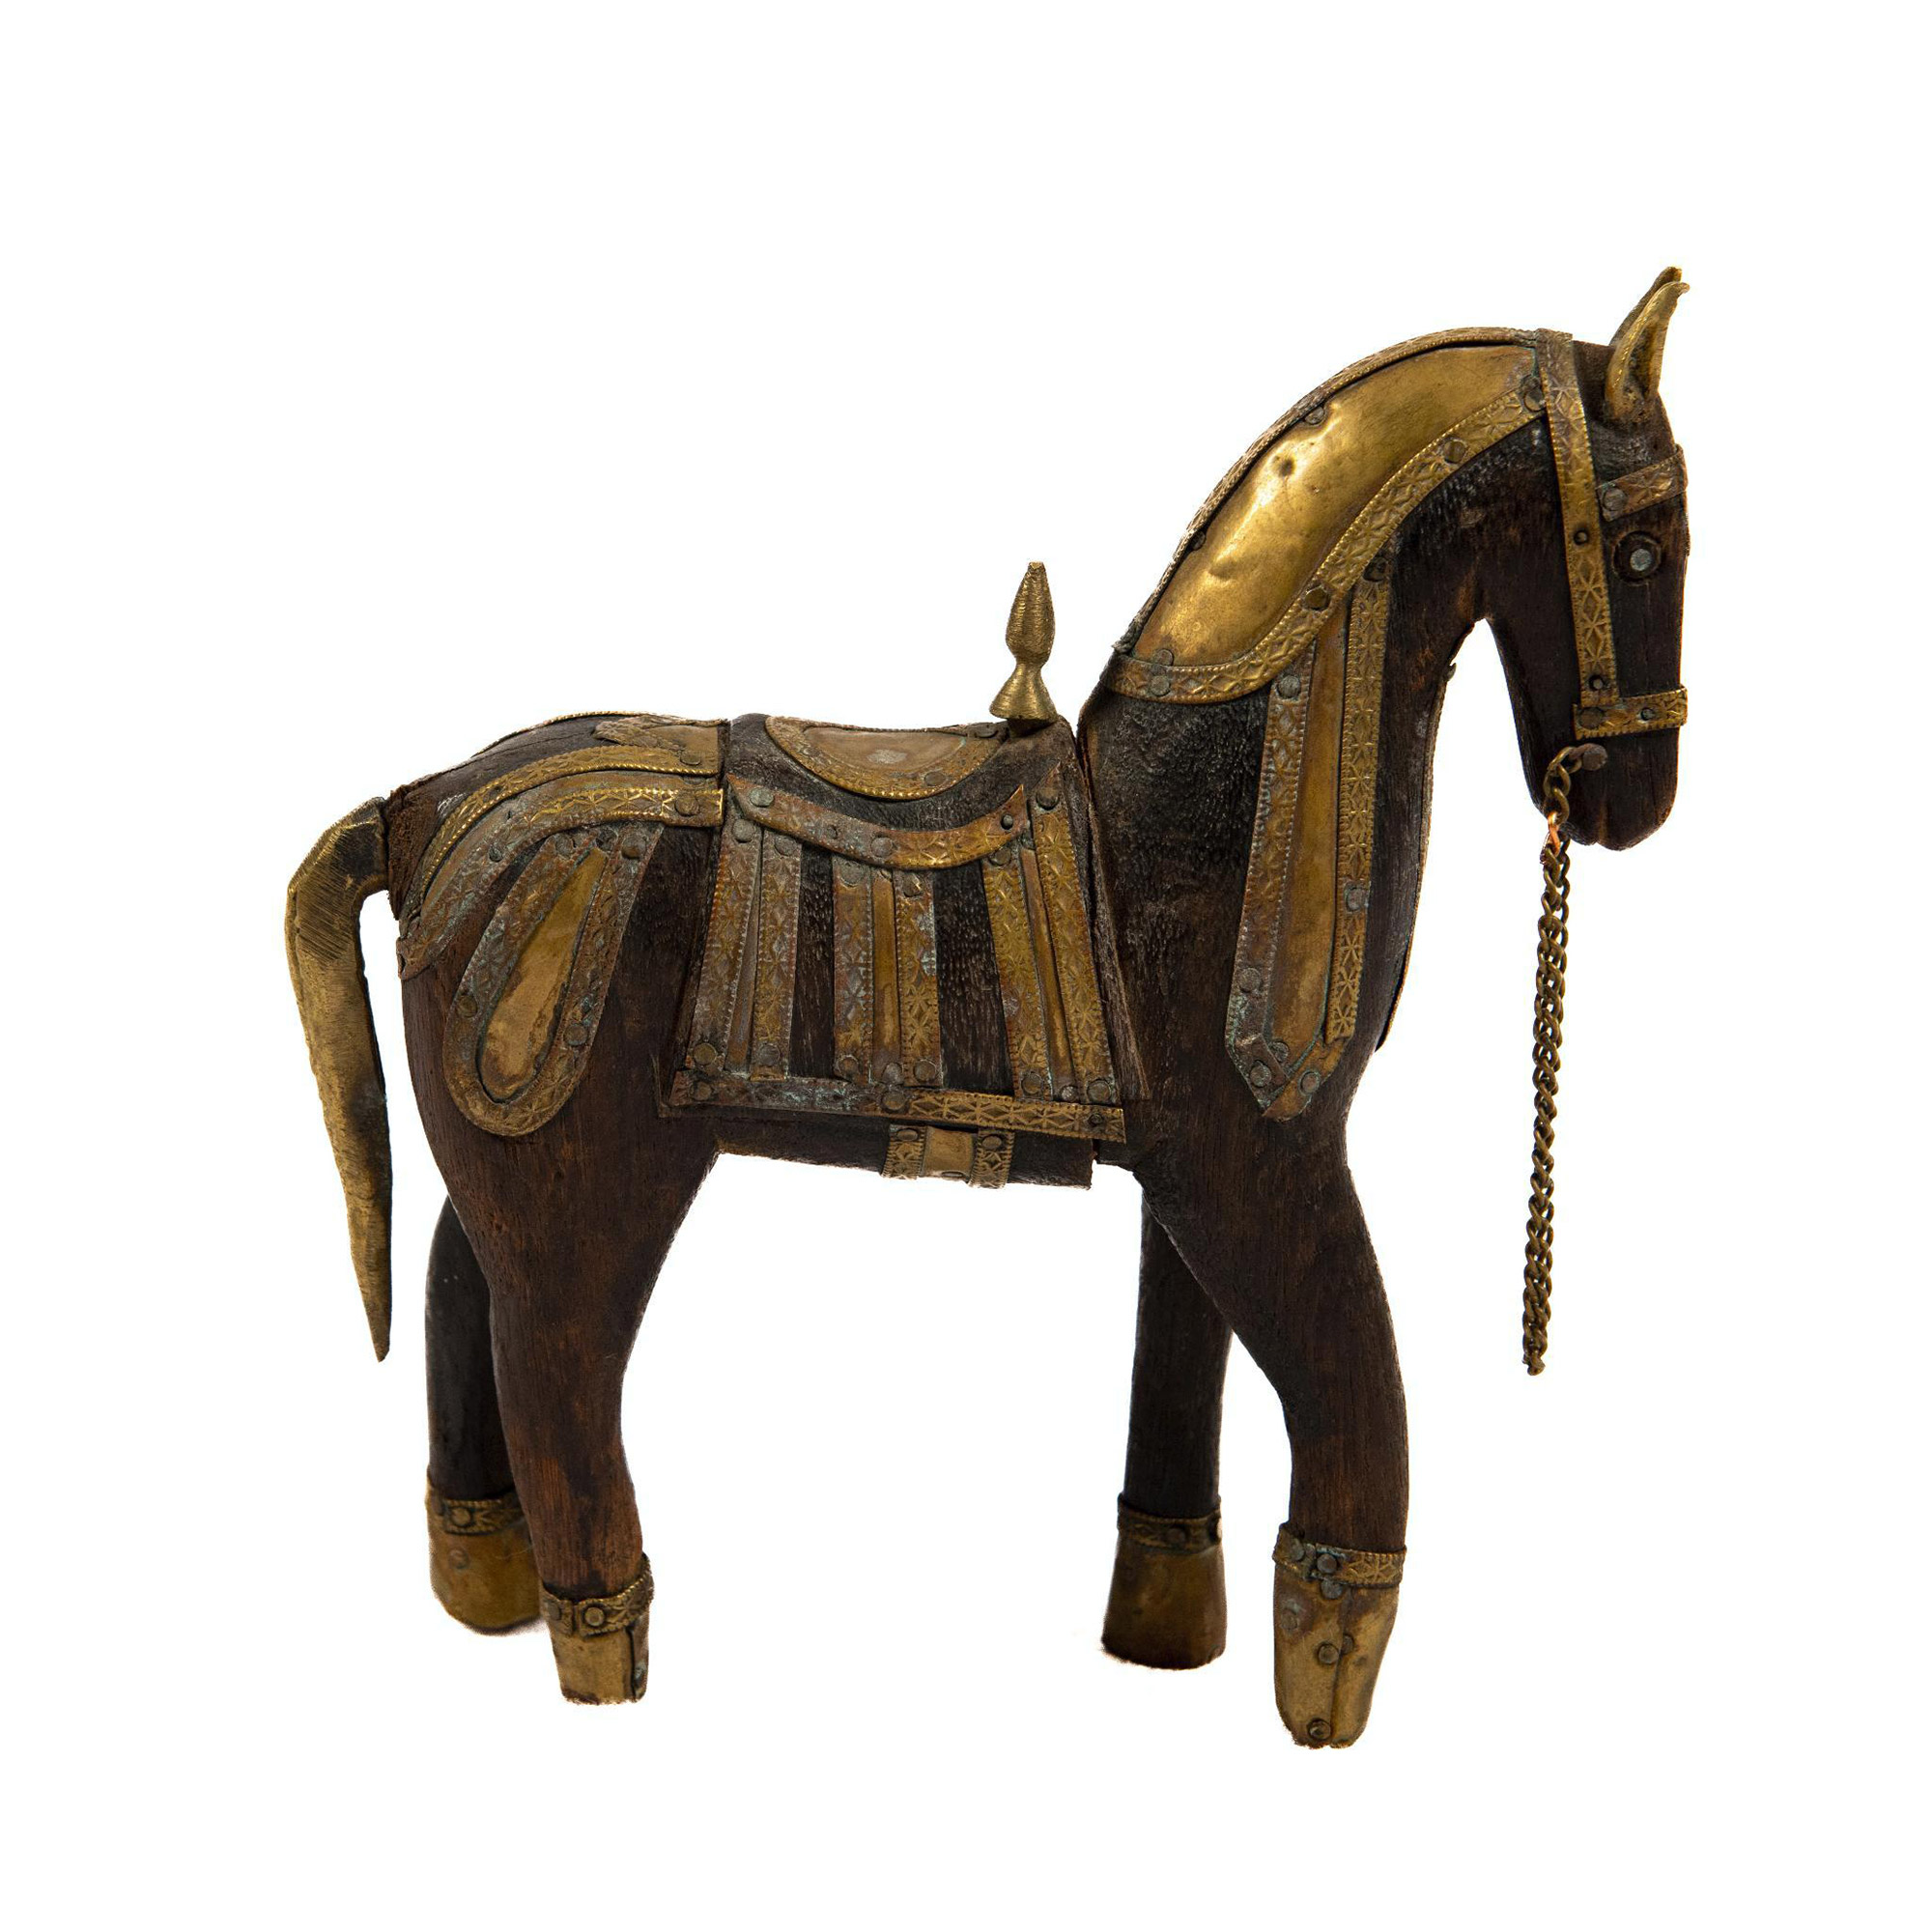 Rajasthani Wooden War Horse with Brass Accents - Bild 3 aus 4